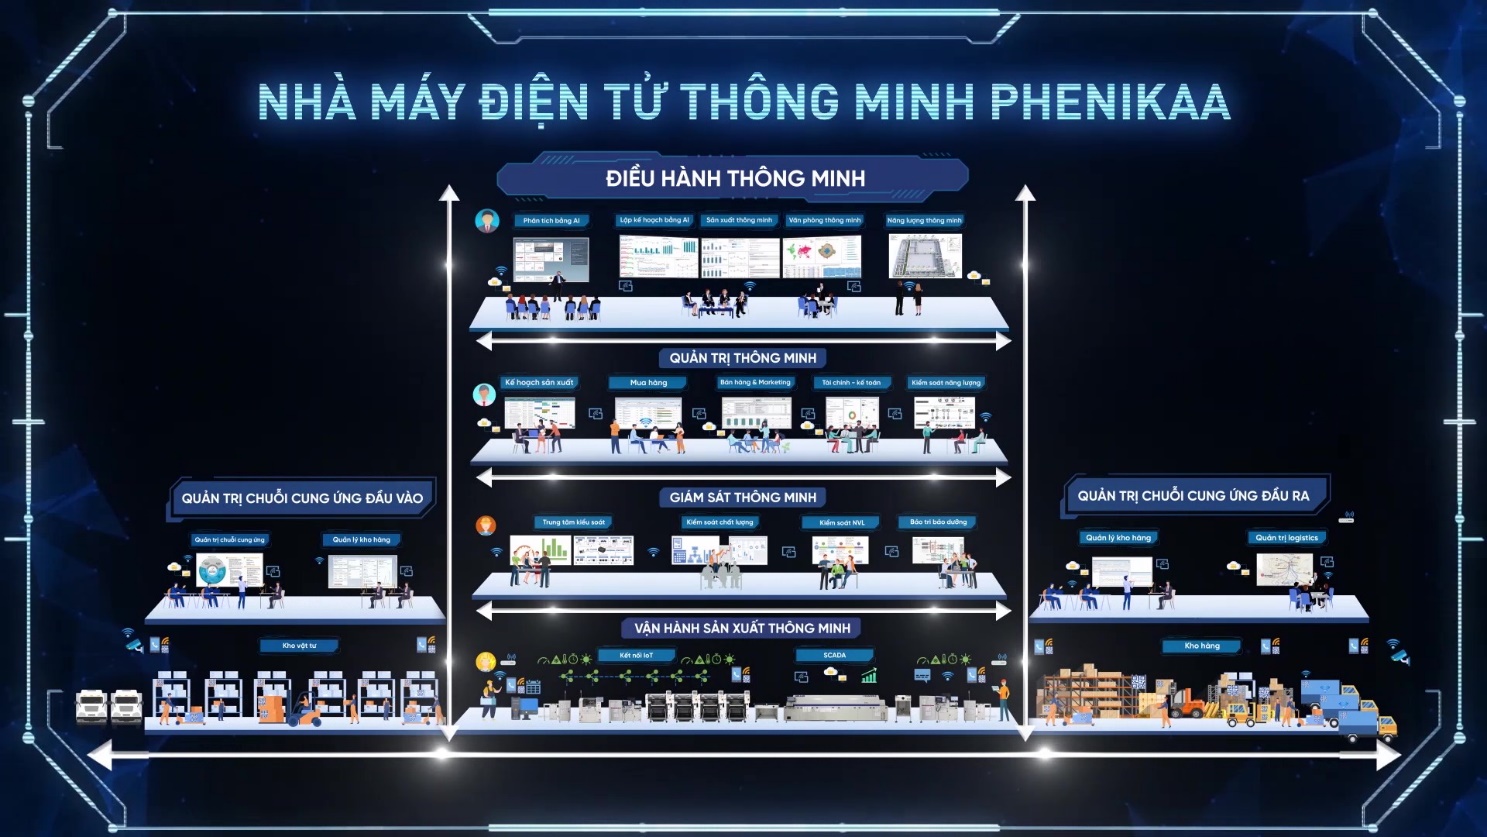 Tập đoàn Phenikaa chính thức ra mắt nhà máy điện tử thông minh - Ảnh 3.